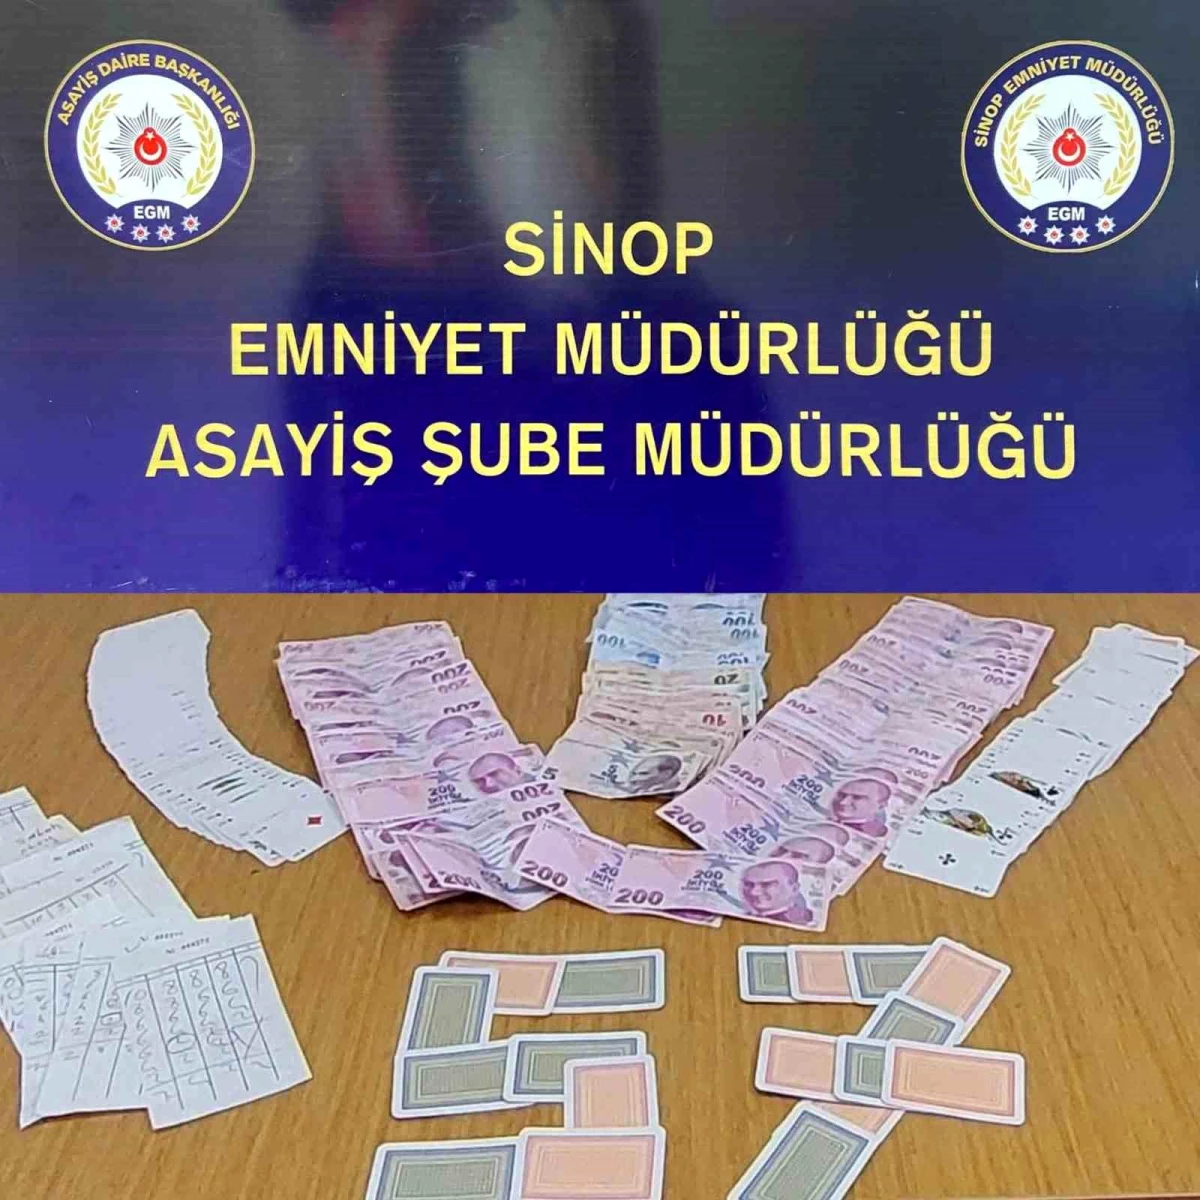 Sinop'ta yapılan kumar operasyonunda 13 kişiye para cezası uygulandı